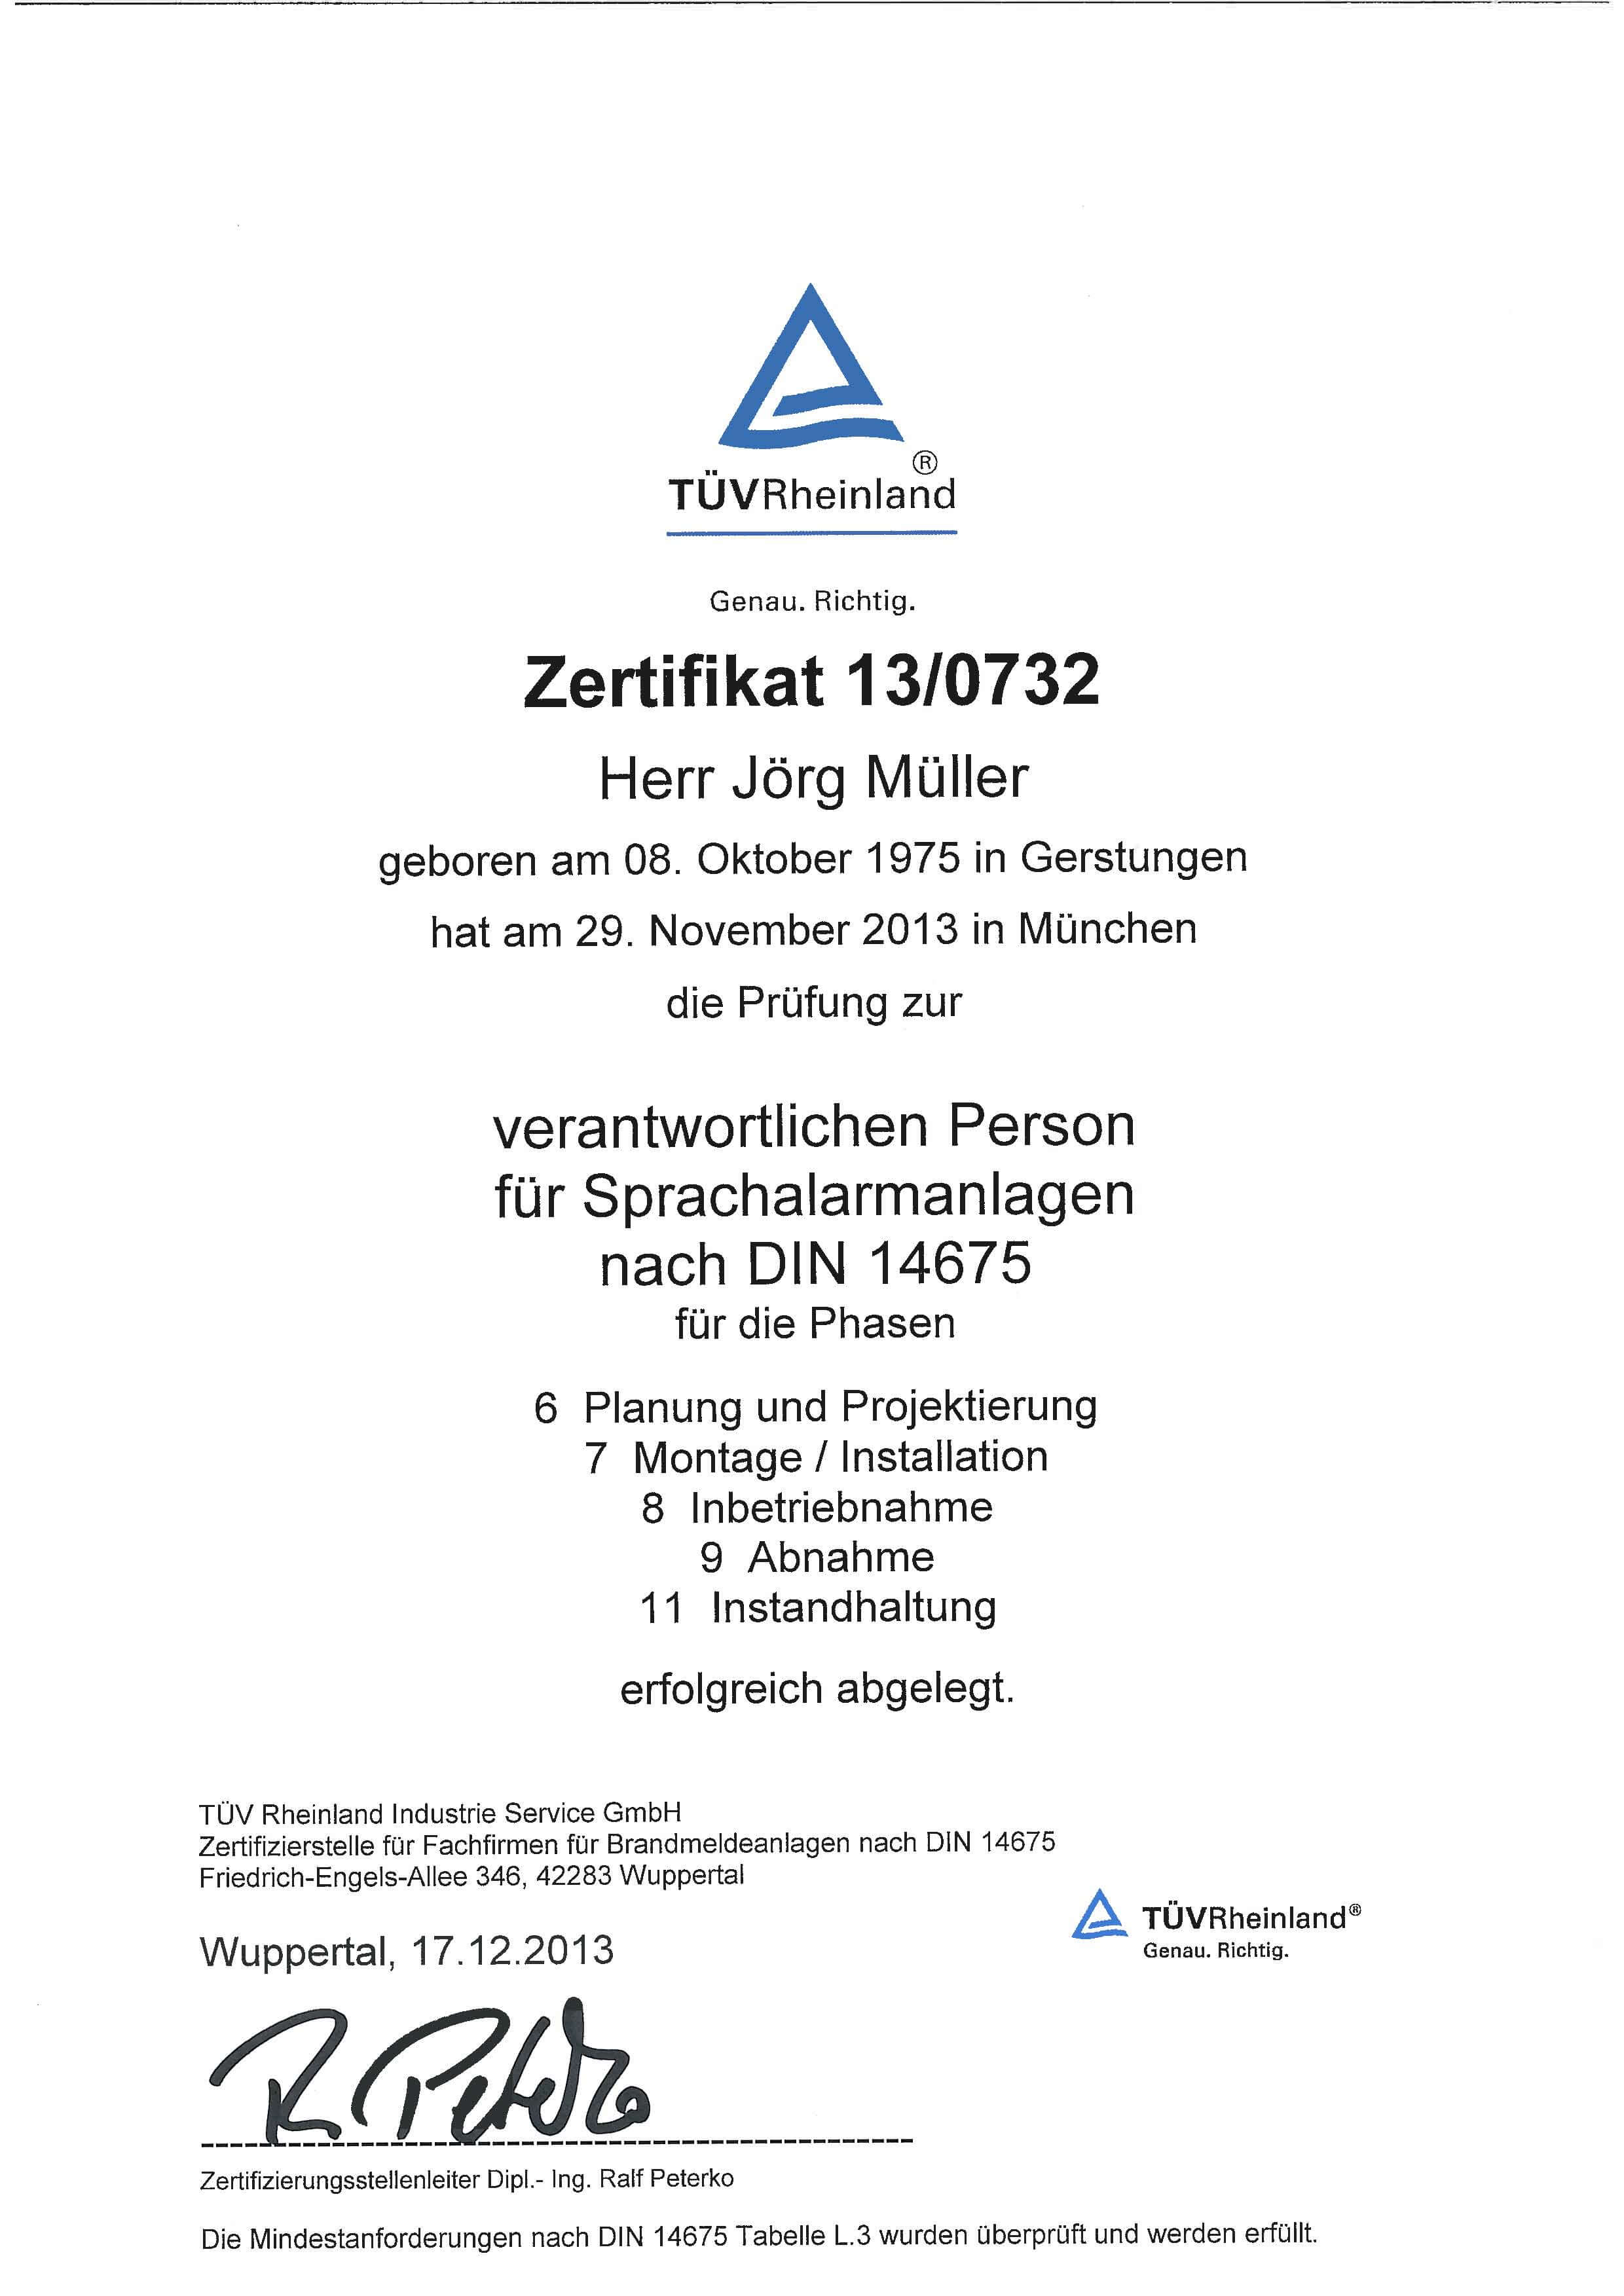 Zertifikat_TUeV-Rheinland_Verantwortliche_Person_SAA_DIN 14675_JM.jpg